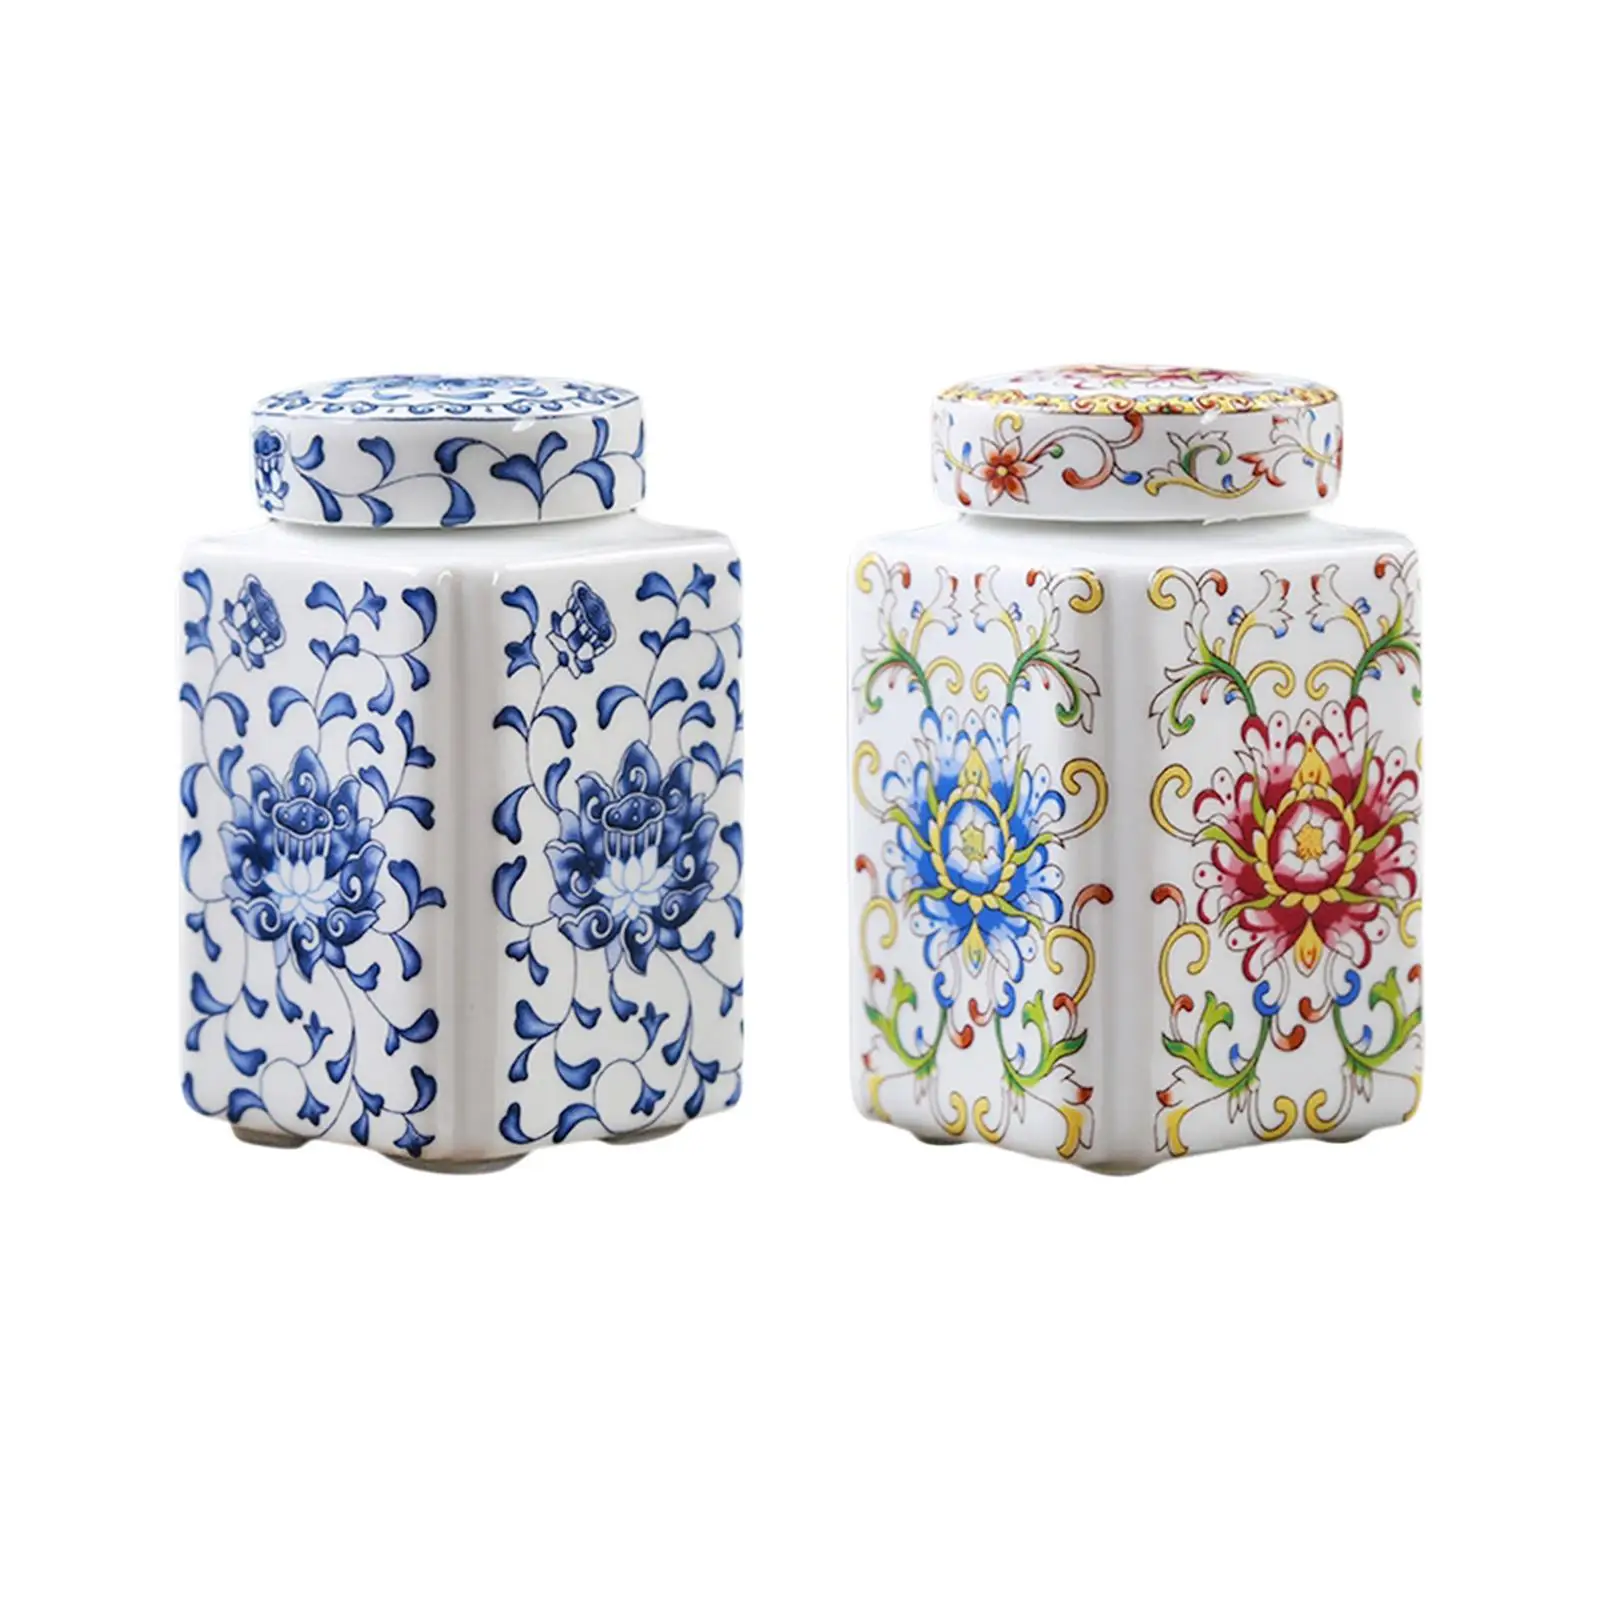 Ceramic Ginger Jar, Porcelain Temple Jar, Flower Display, Versatile Porcelain